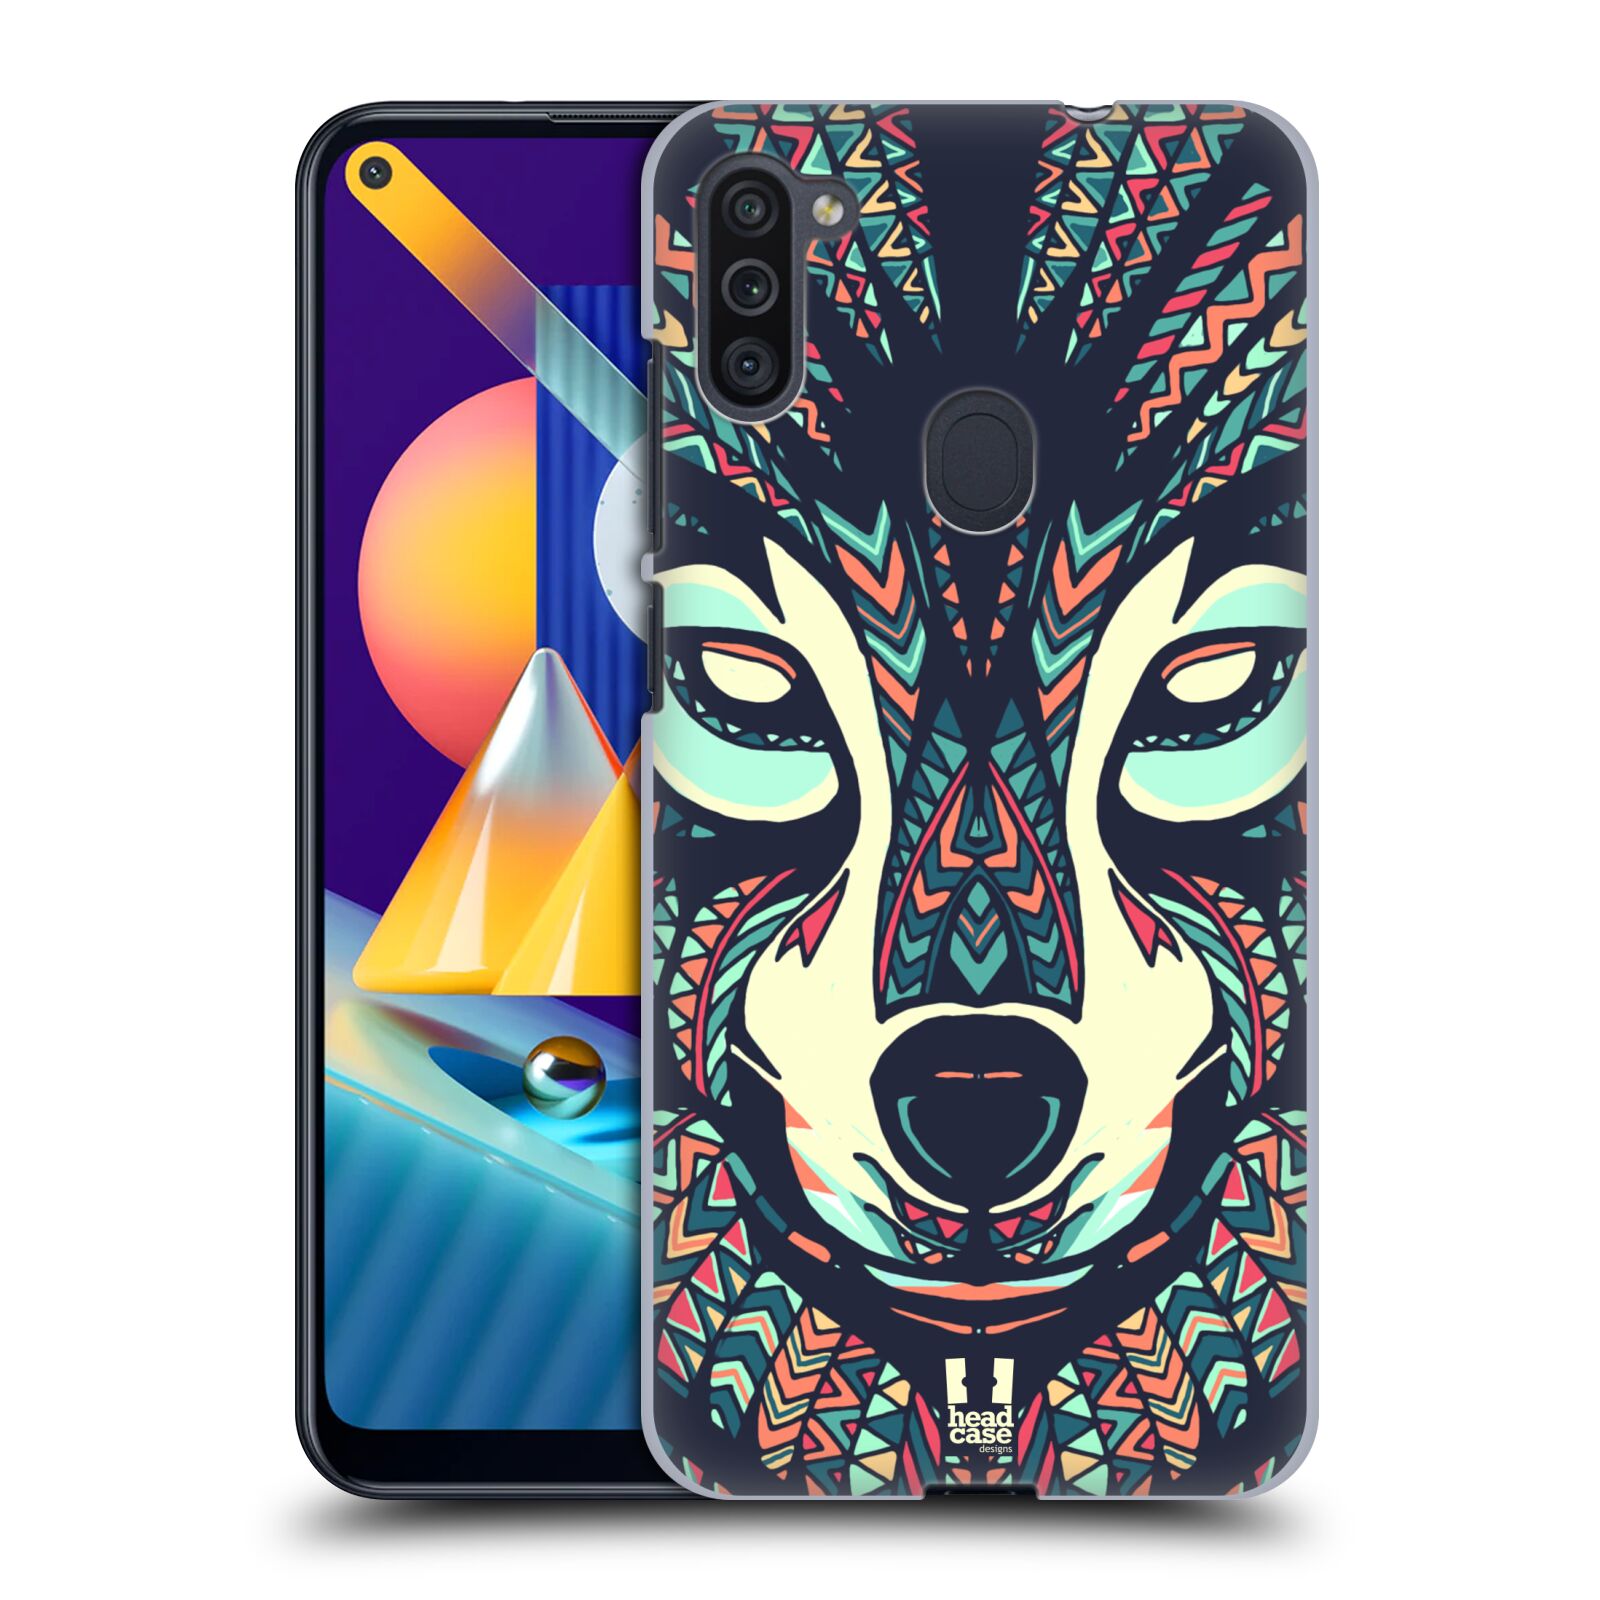 Plastový obal HEAD CASE na mobil Samsung Galaxy M11 vzor Aztécký motiv zvíře 3 vlk